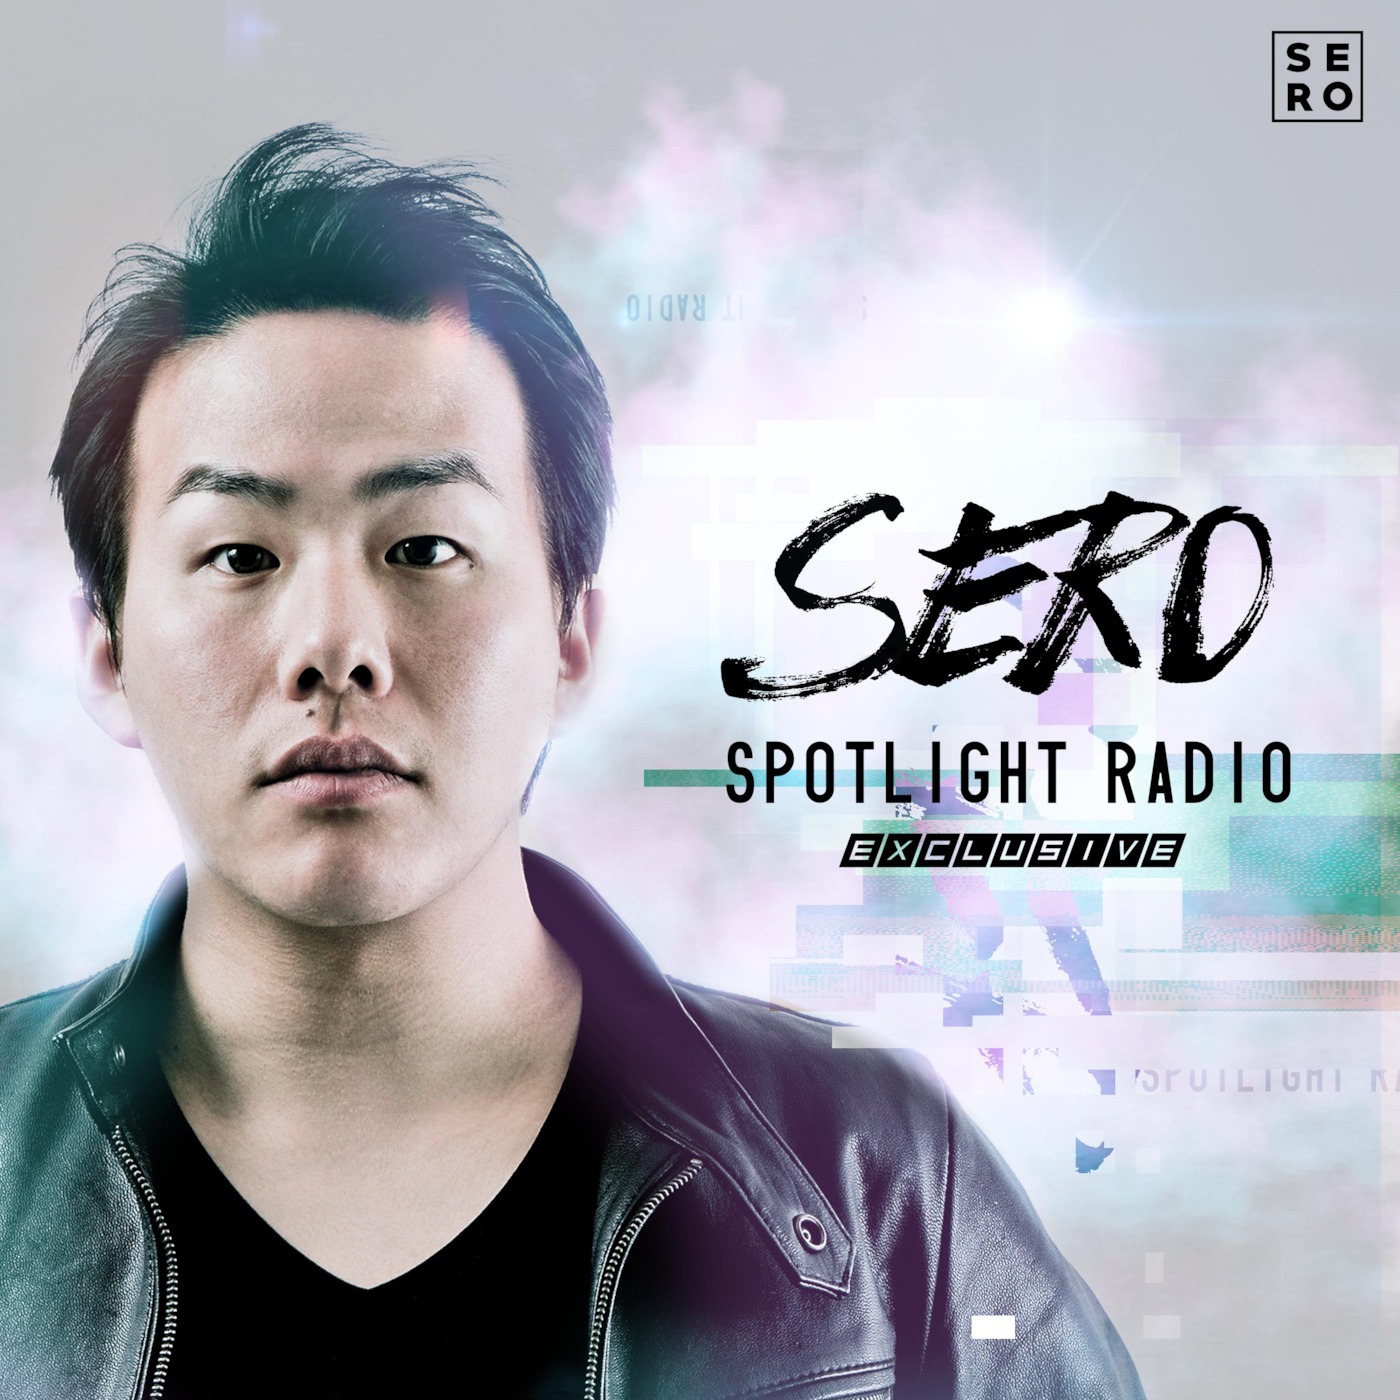 SERO Presents: Spotlight Radio